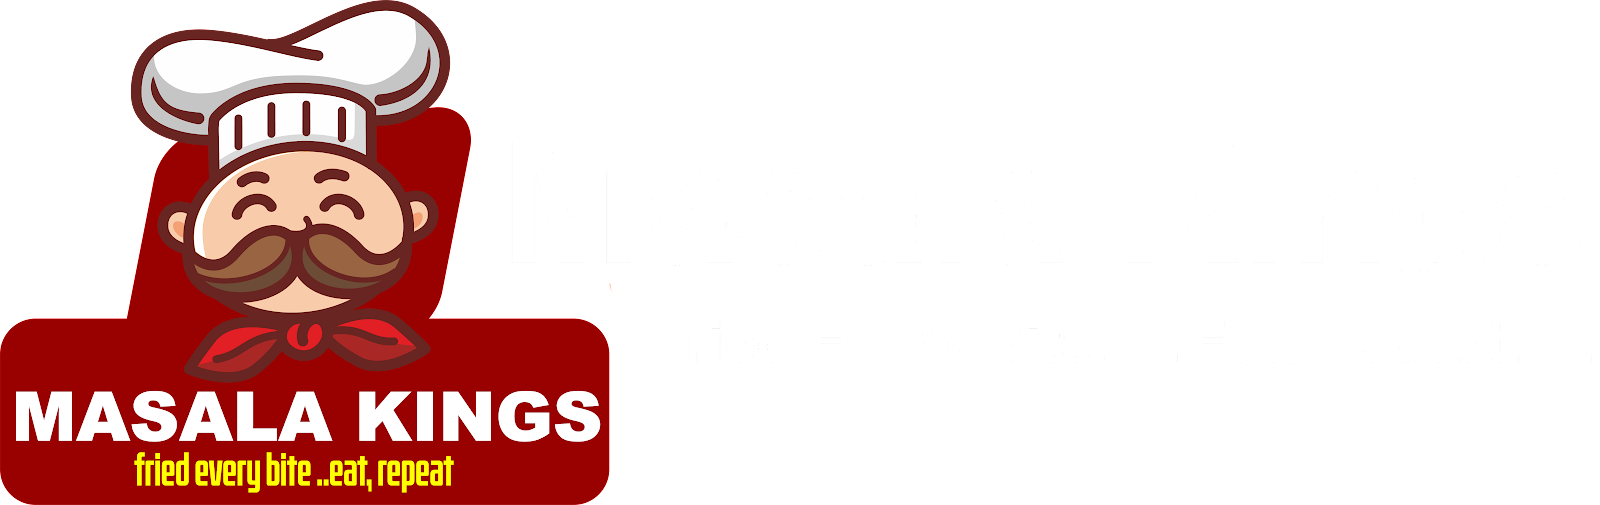 Masala Kings